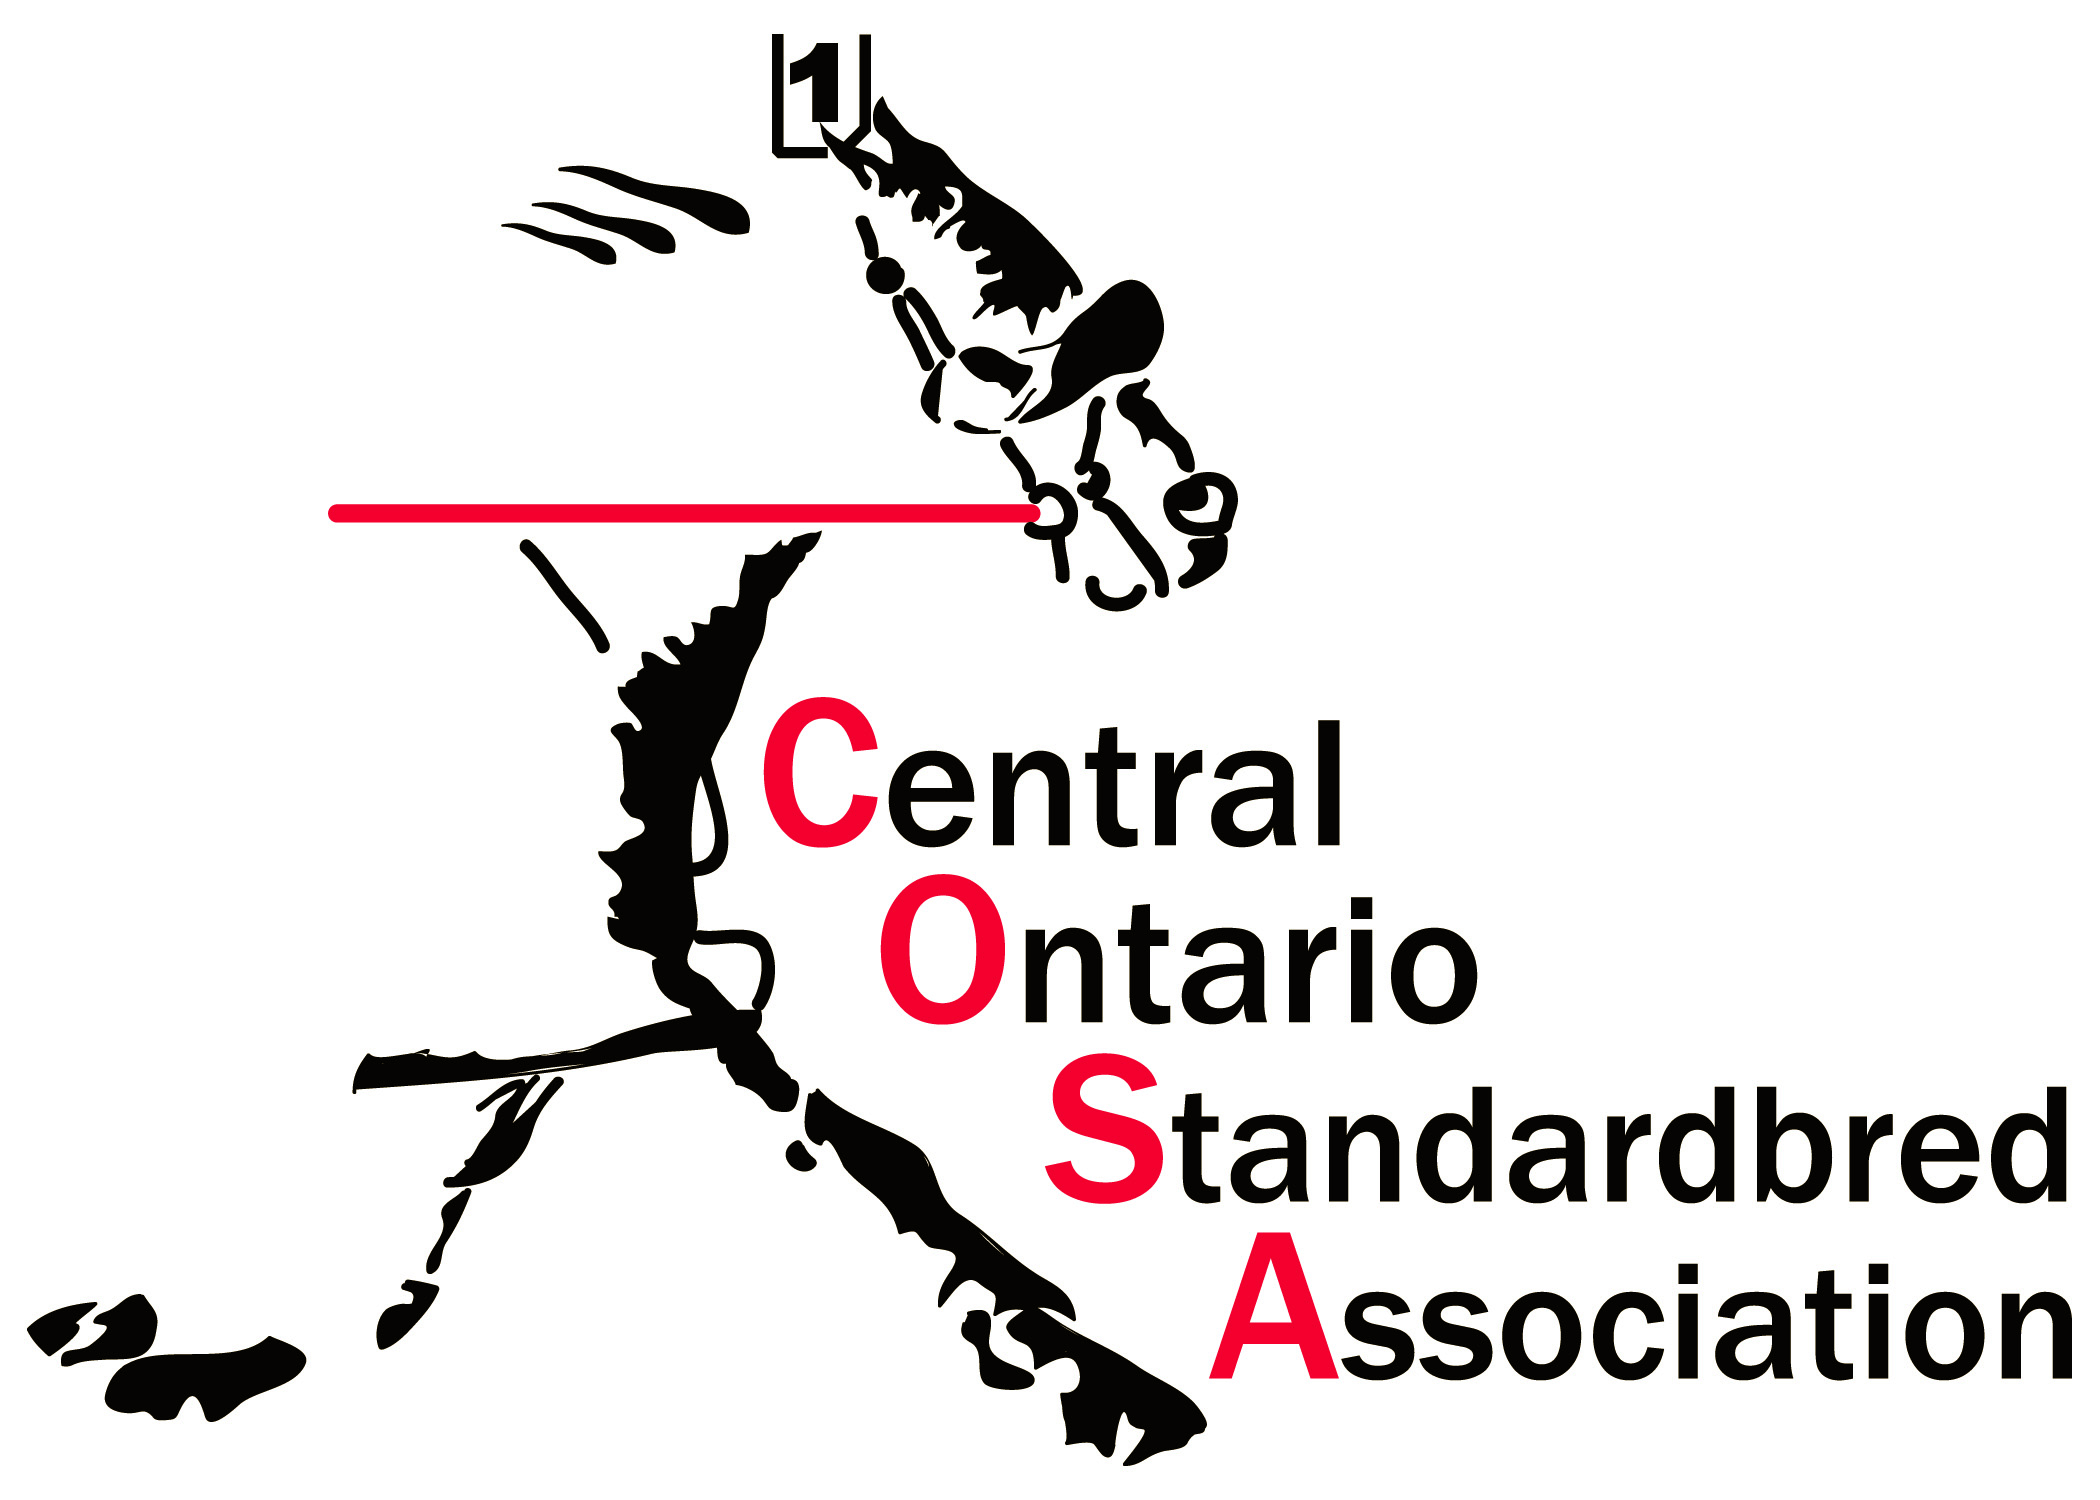 Central Ontario Standardbred Association logo